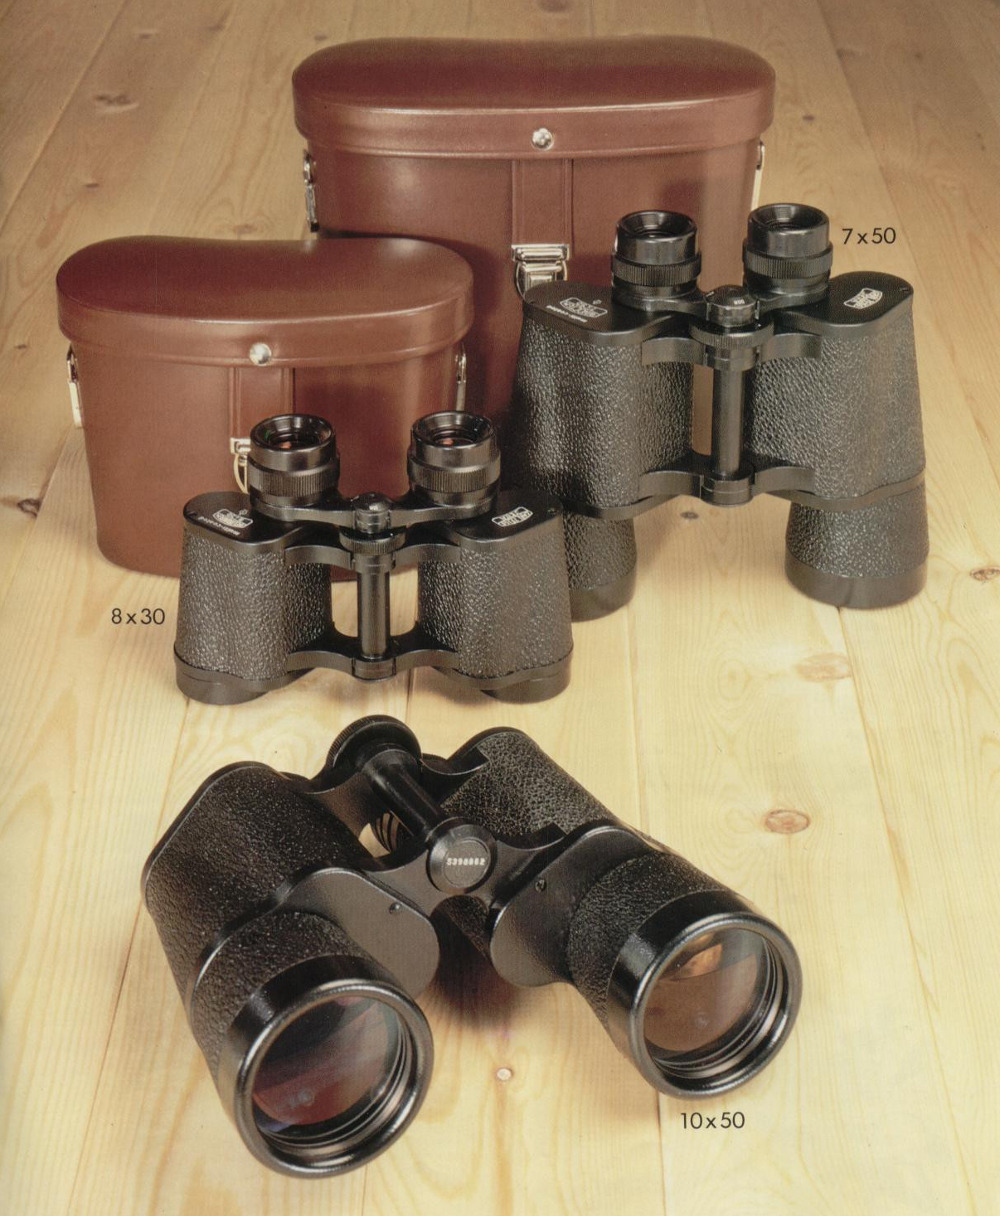 Carl Zeiss Carl Zeiss Jen Binoculars8x30 with case 